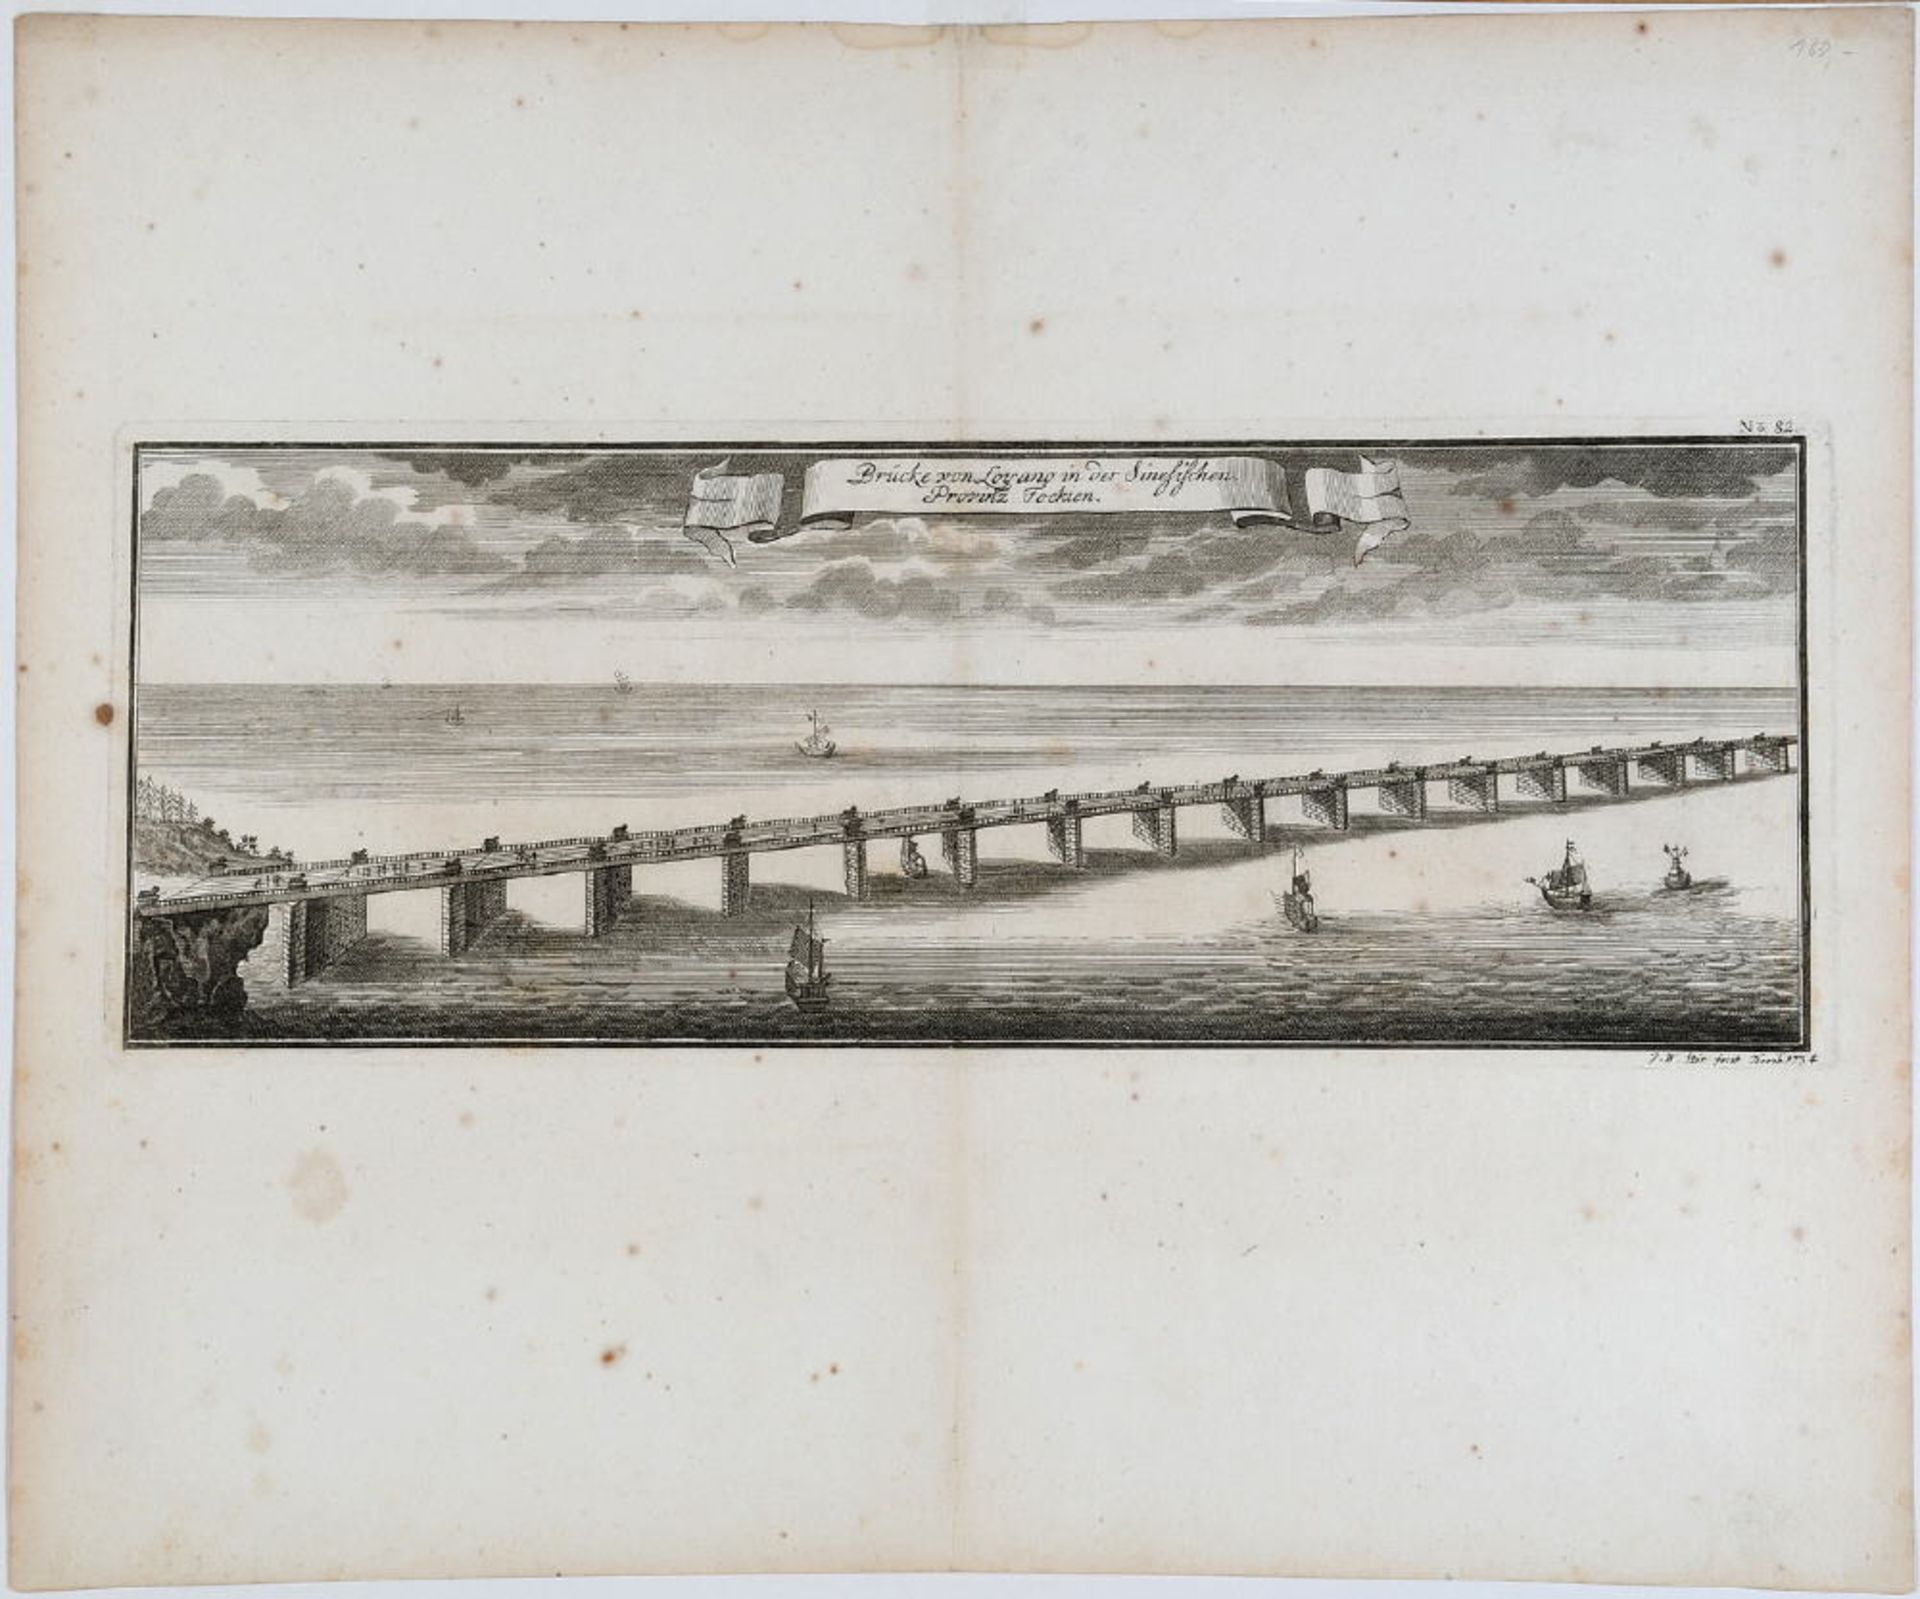 Stör, Johann Wilhelm, 1727 - nach 1755Kupferstich, 14 x 41 cm, betit. " Brücke bon Loyano in der